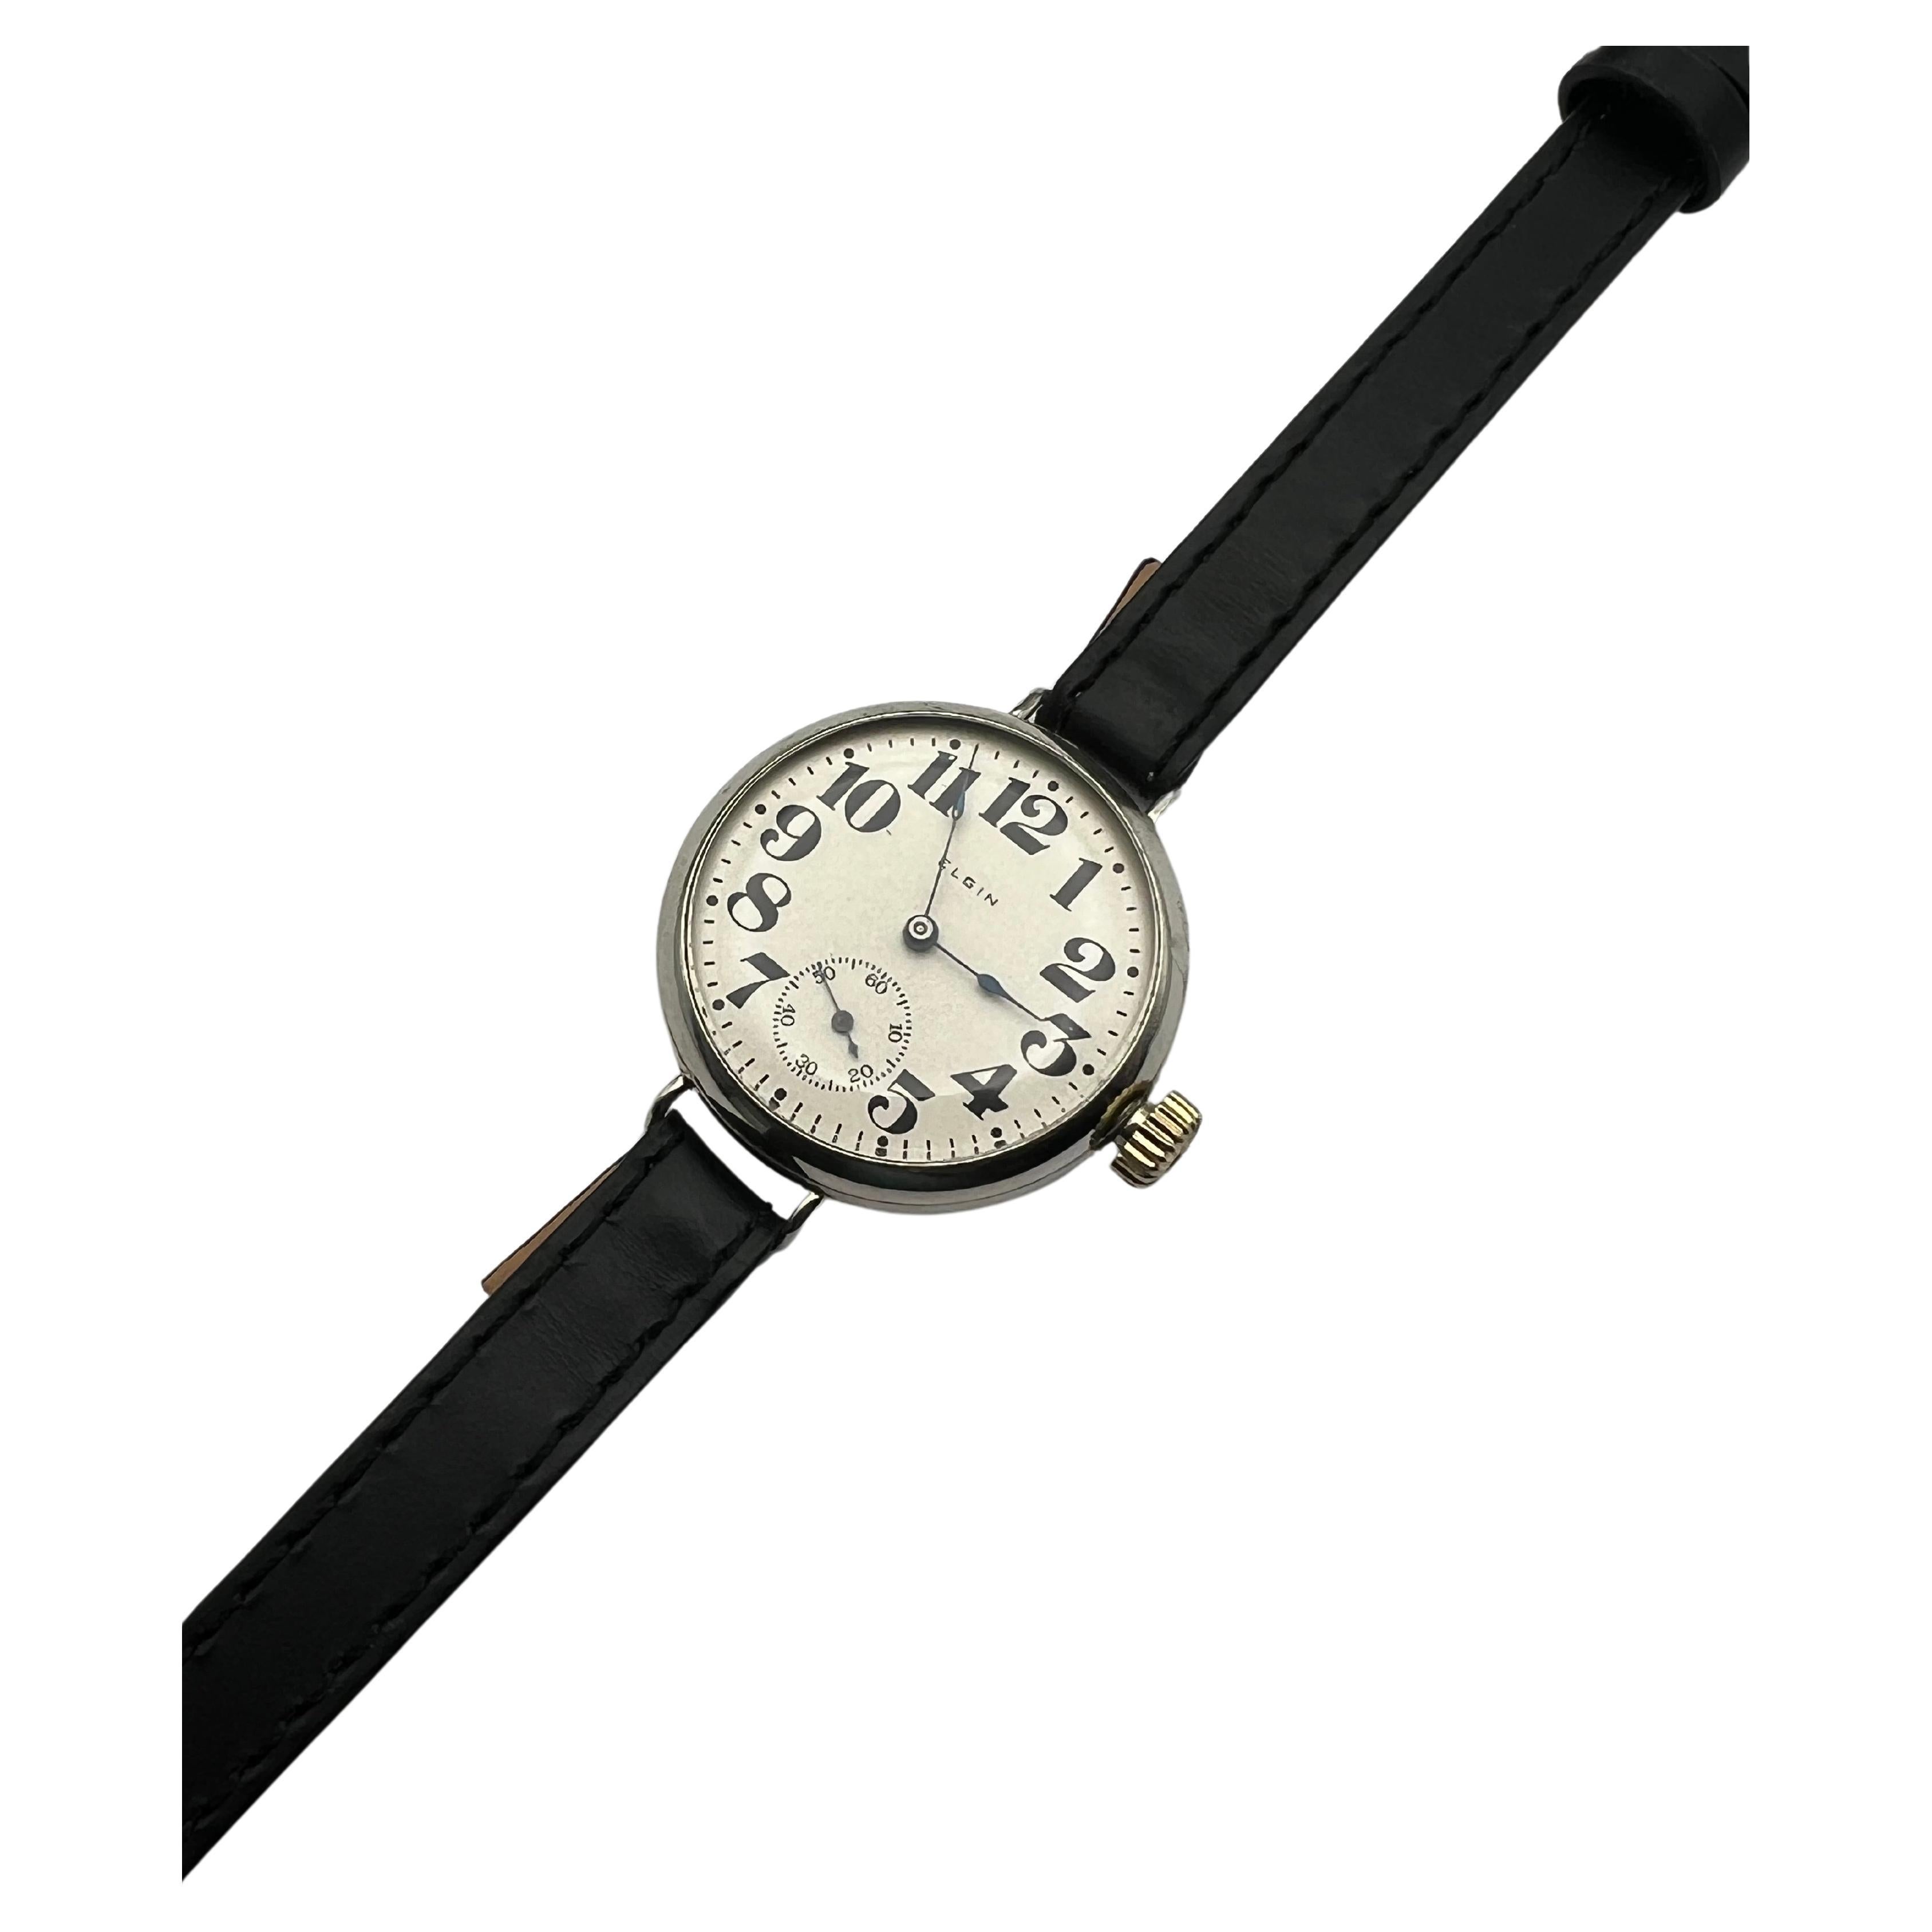 How long does a quartz watch last?